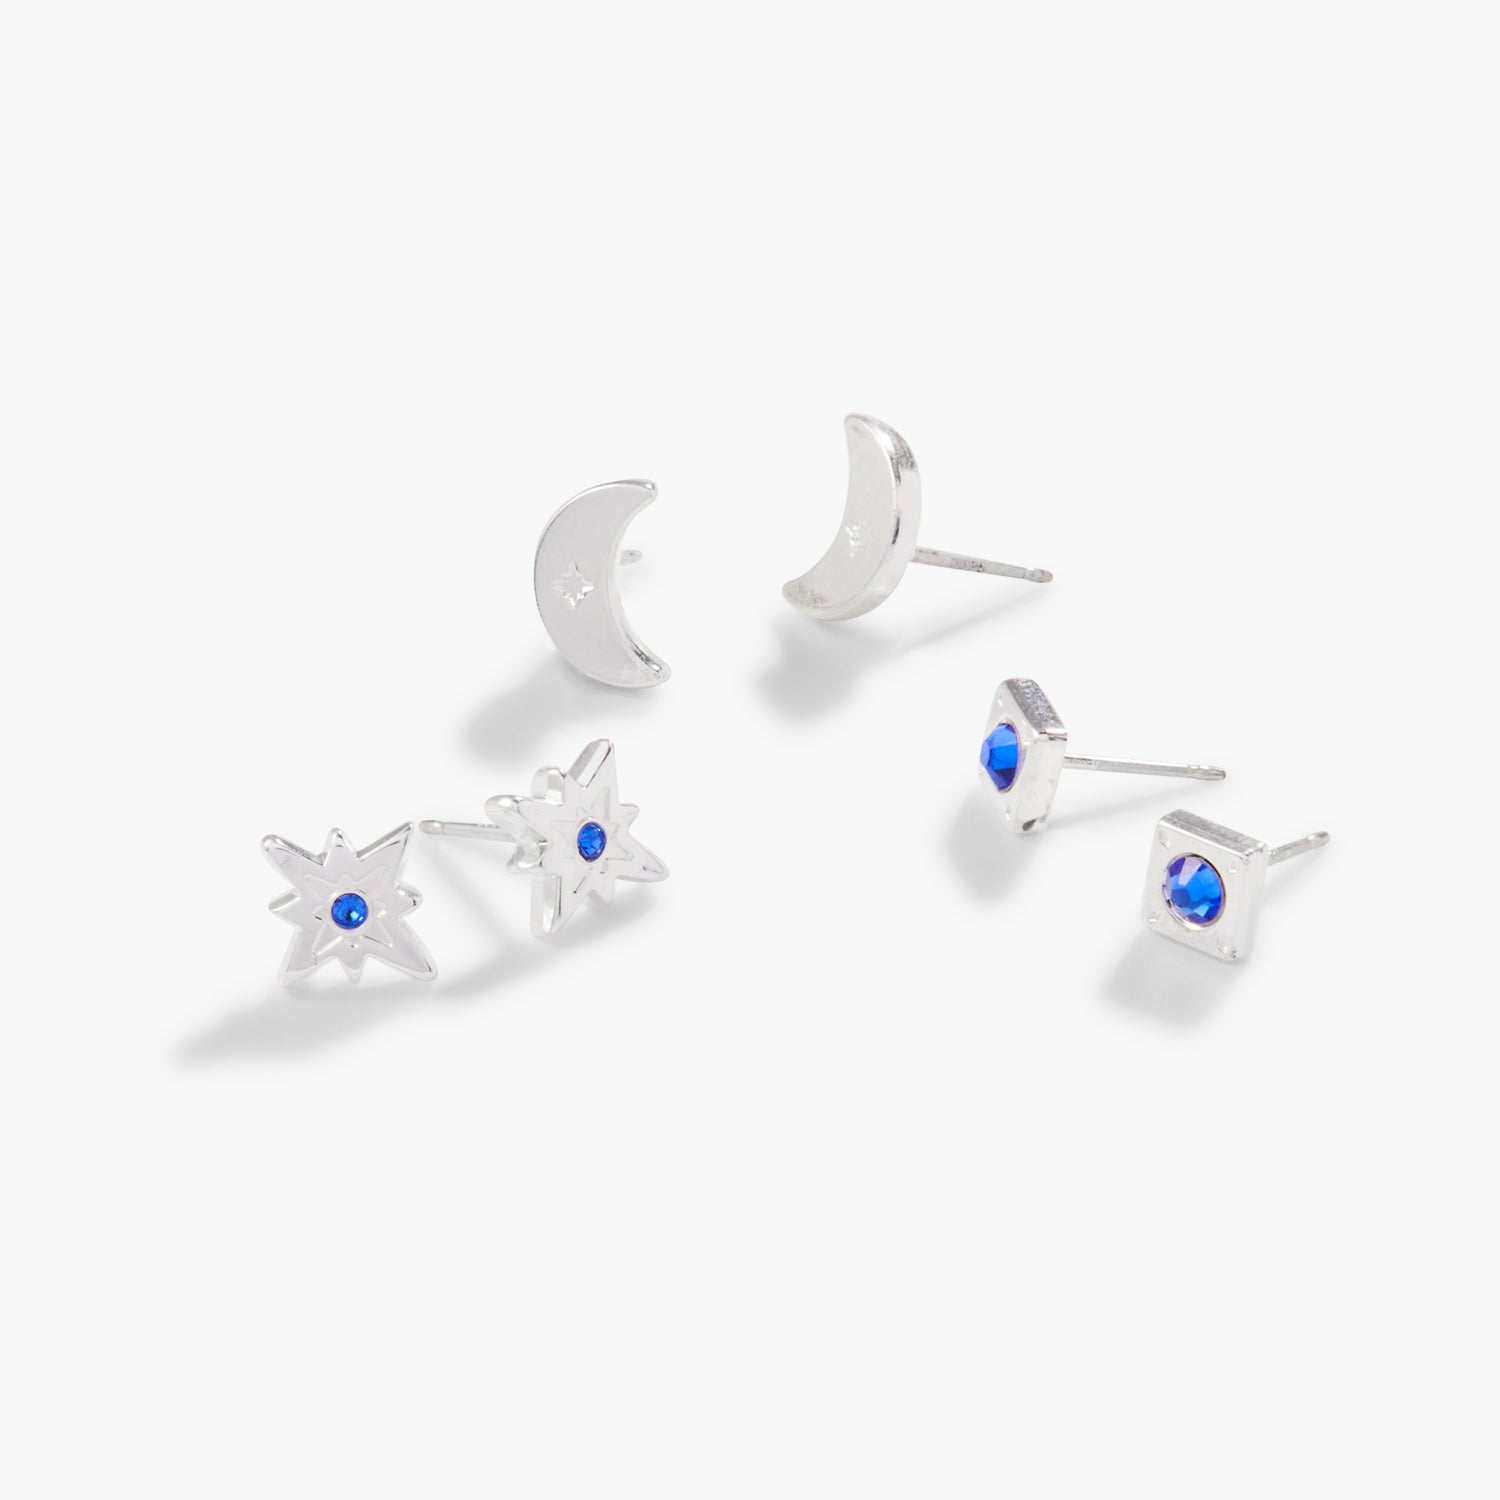 Moon + North Star Stud Earrings, Set of 3